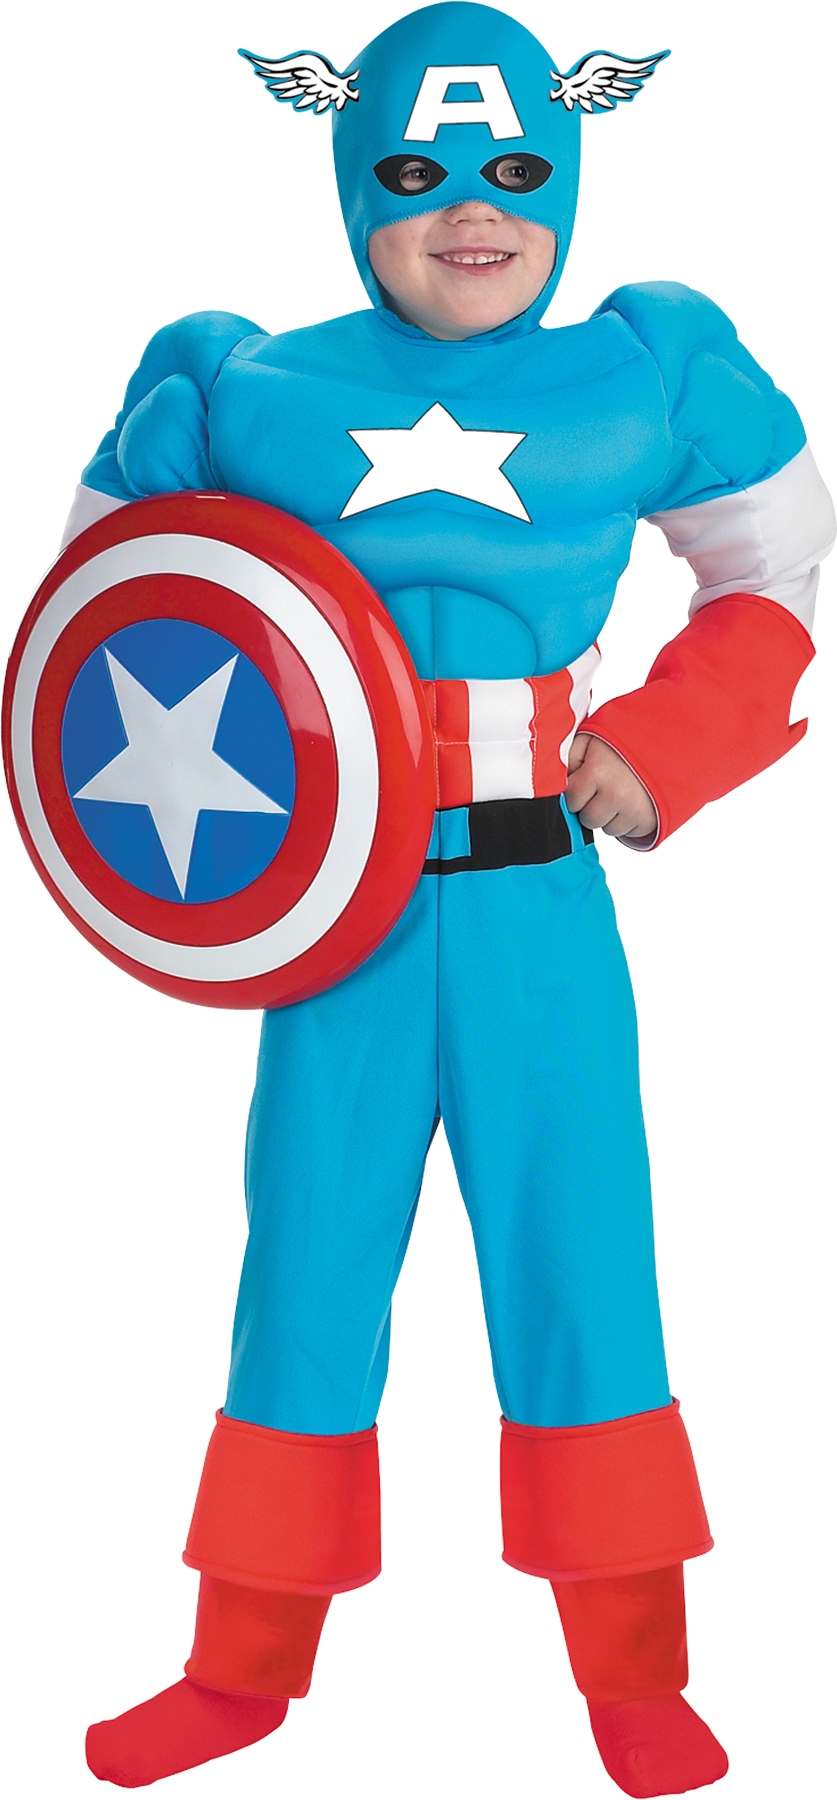 Купить костюмы капитана америки: 43 костюма от 6 производителей